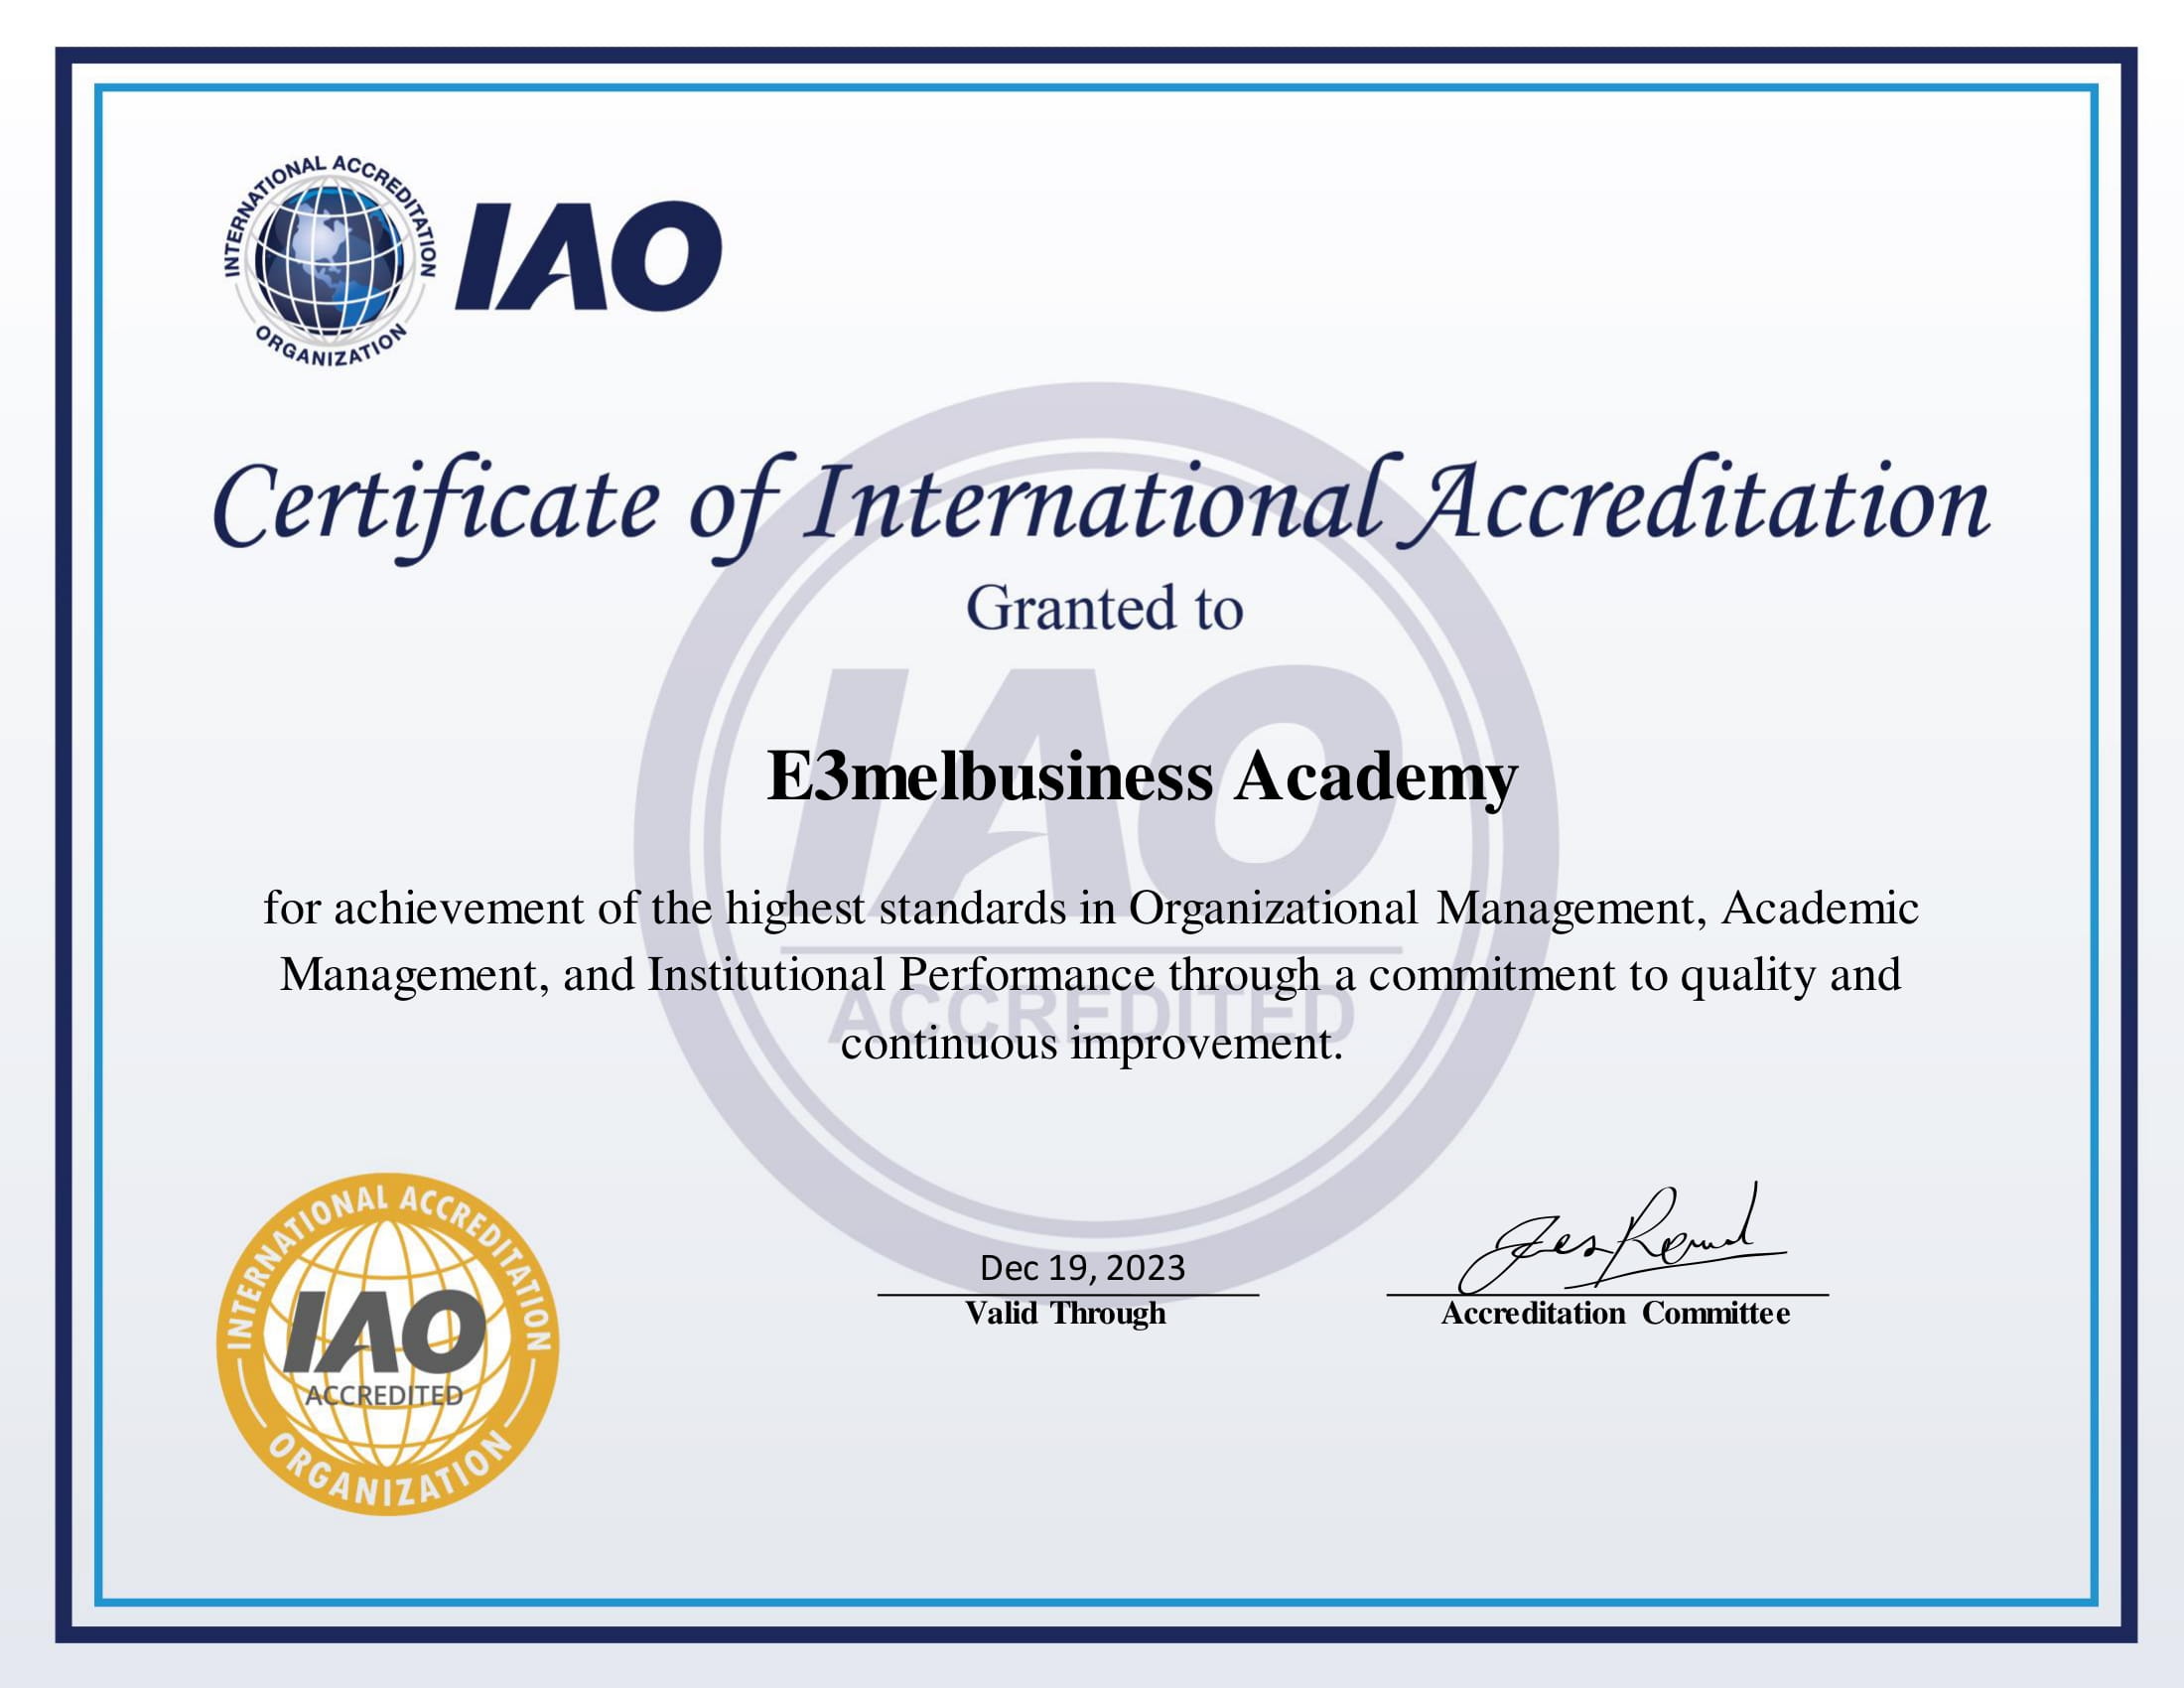 منظمة الاعتماد الدولية IAO